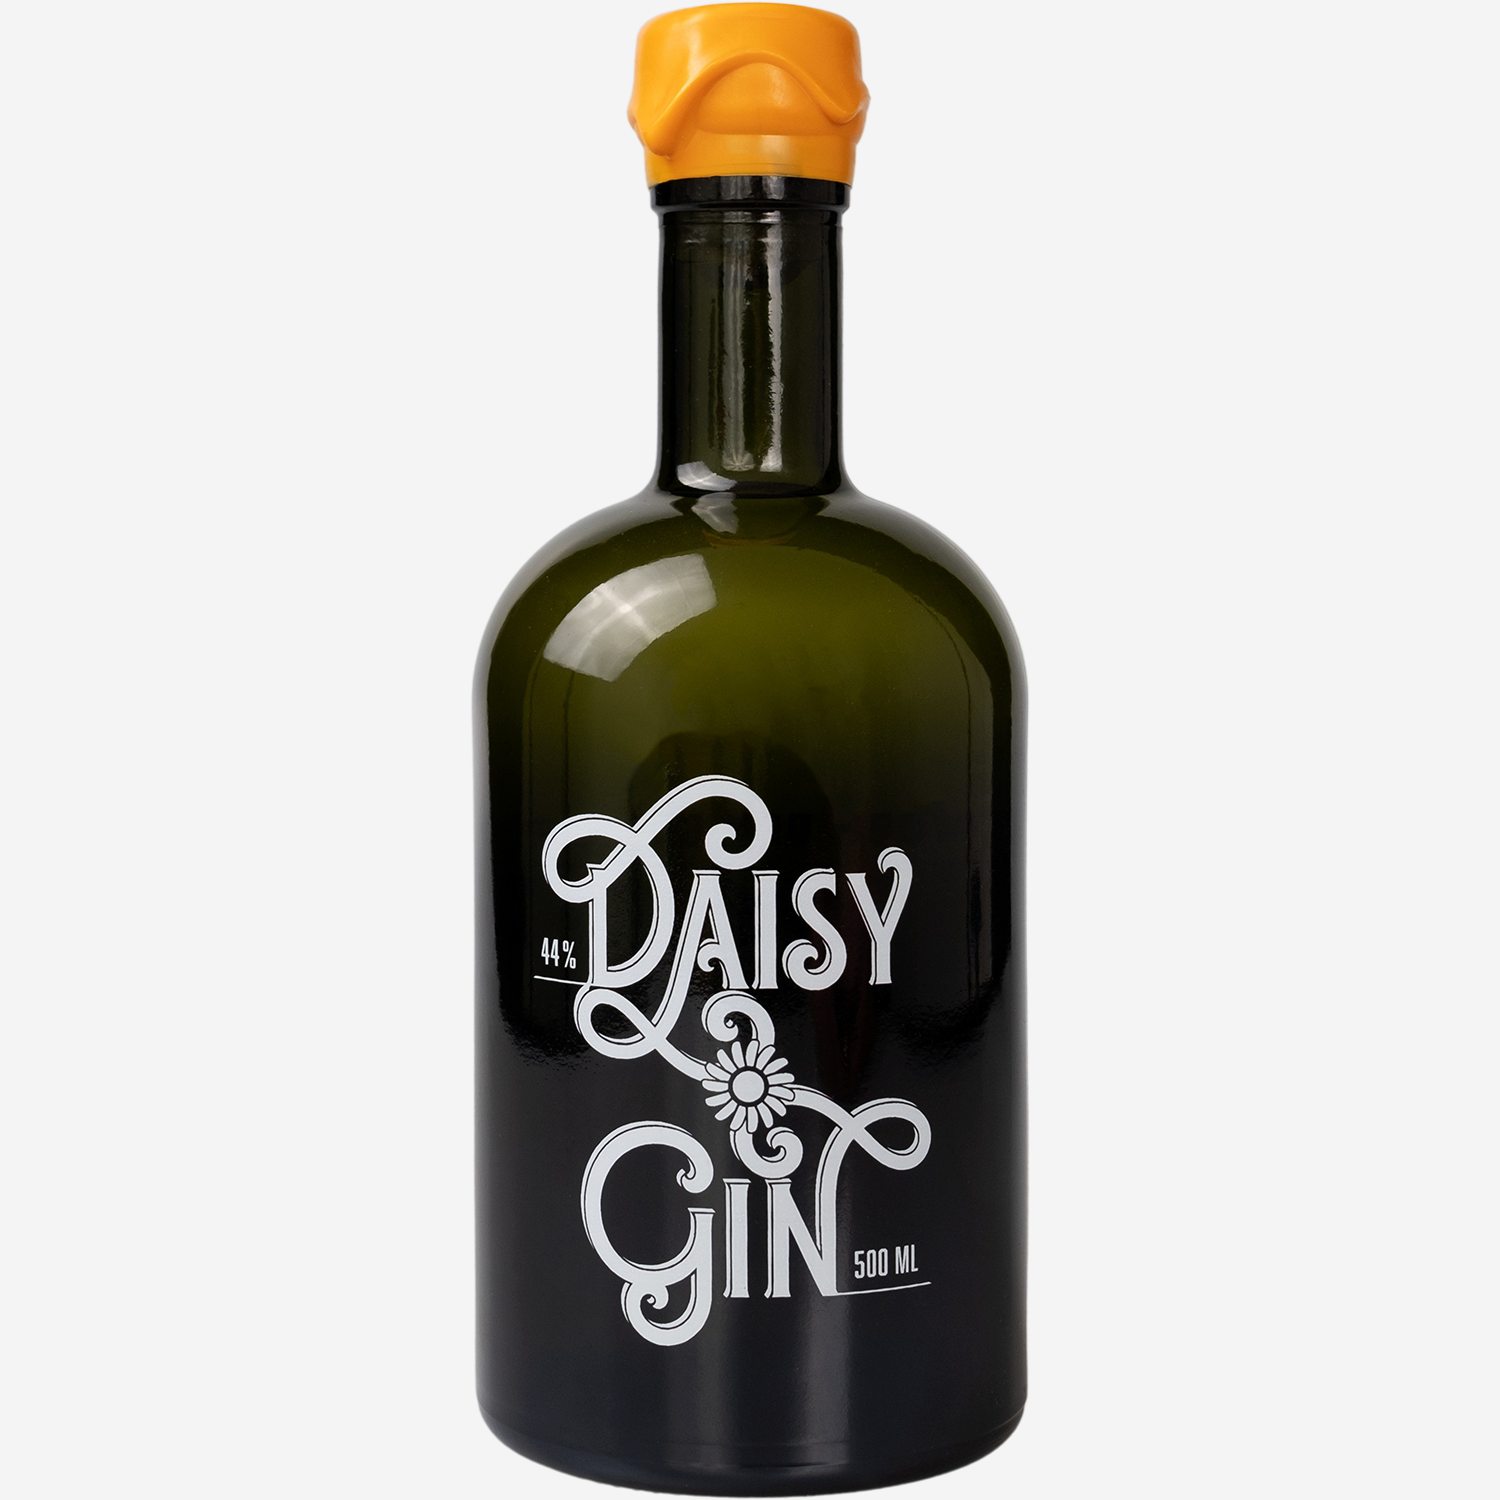 Daisy Gin - Organic London Dry Gin 44 %